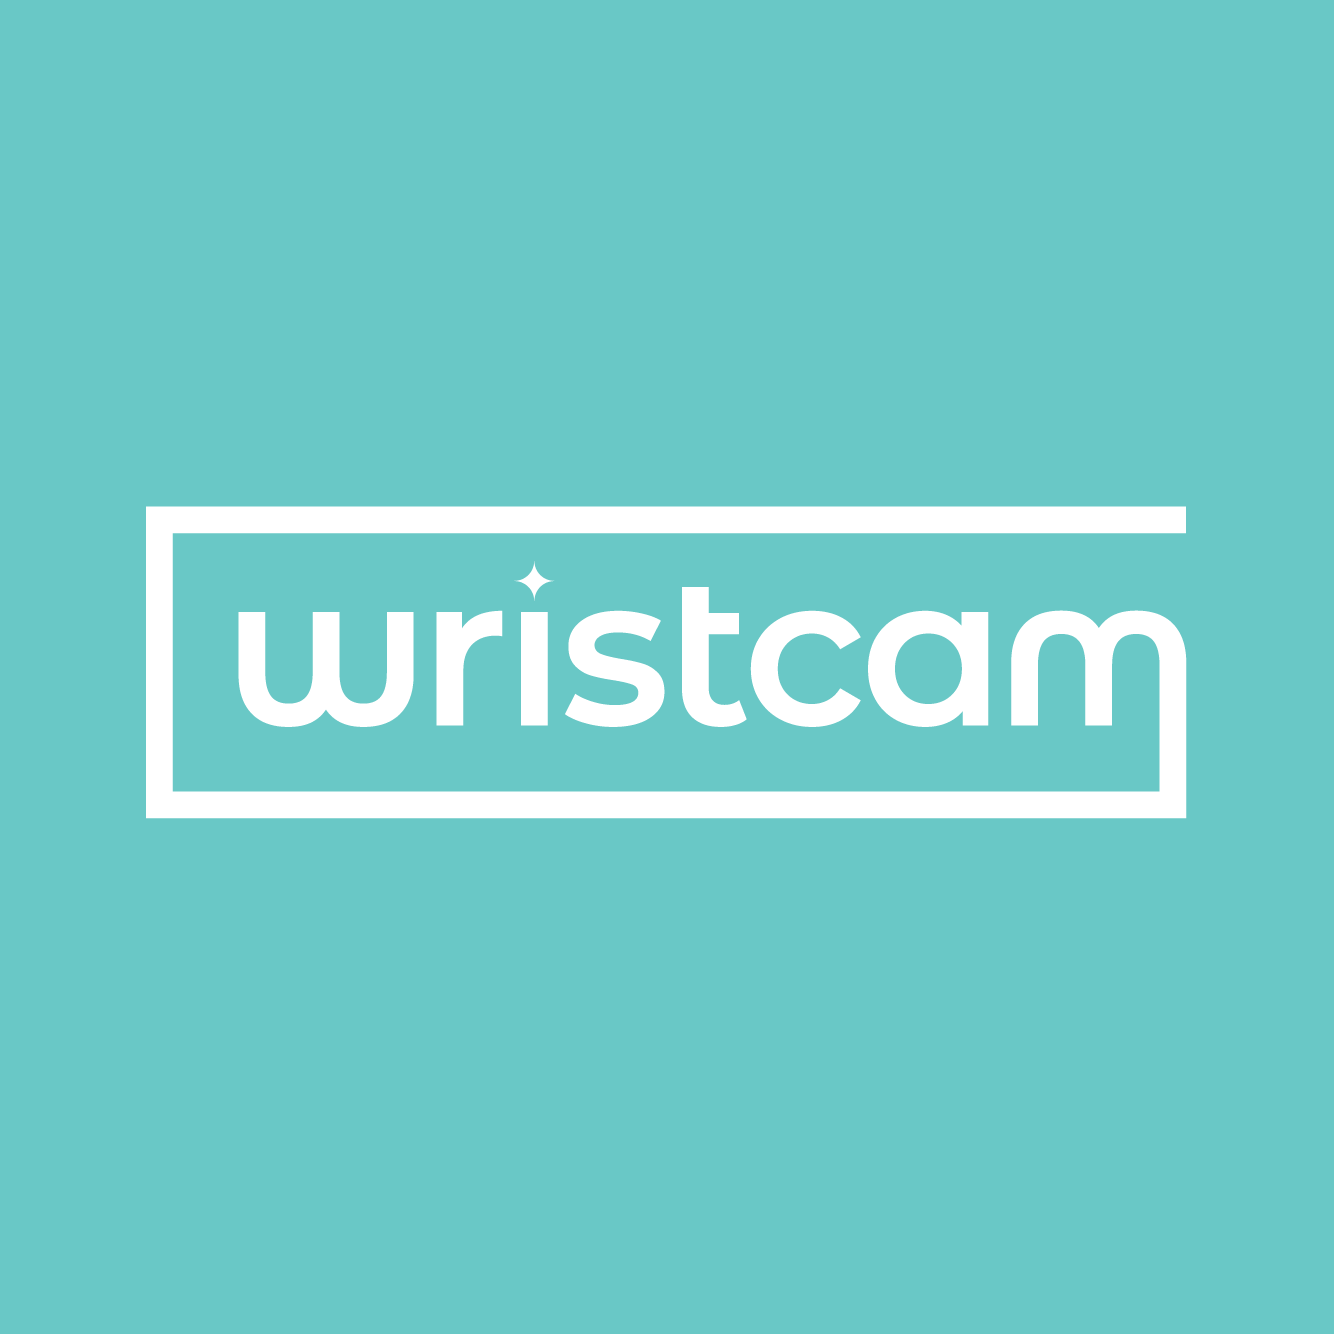 Wristcam